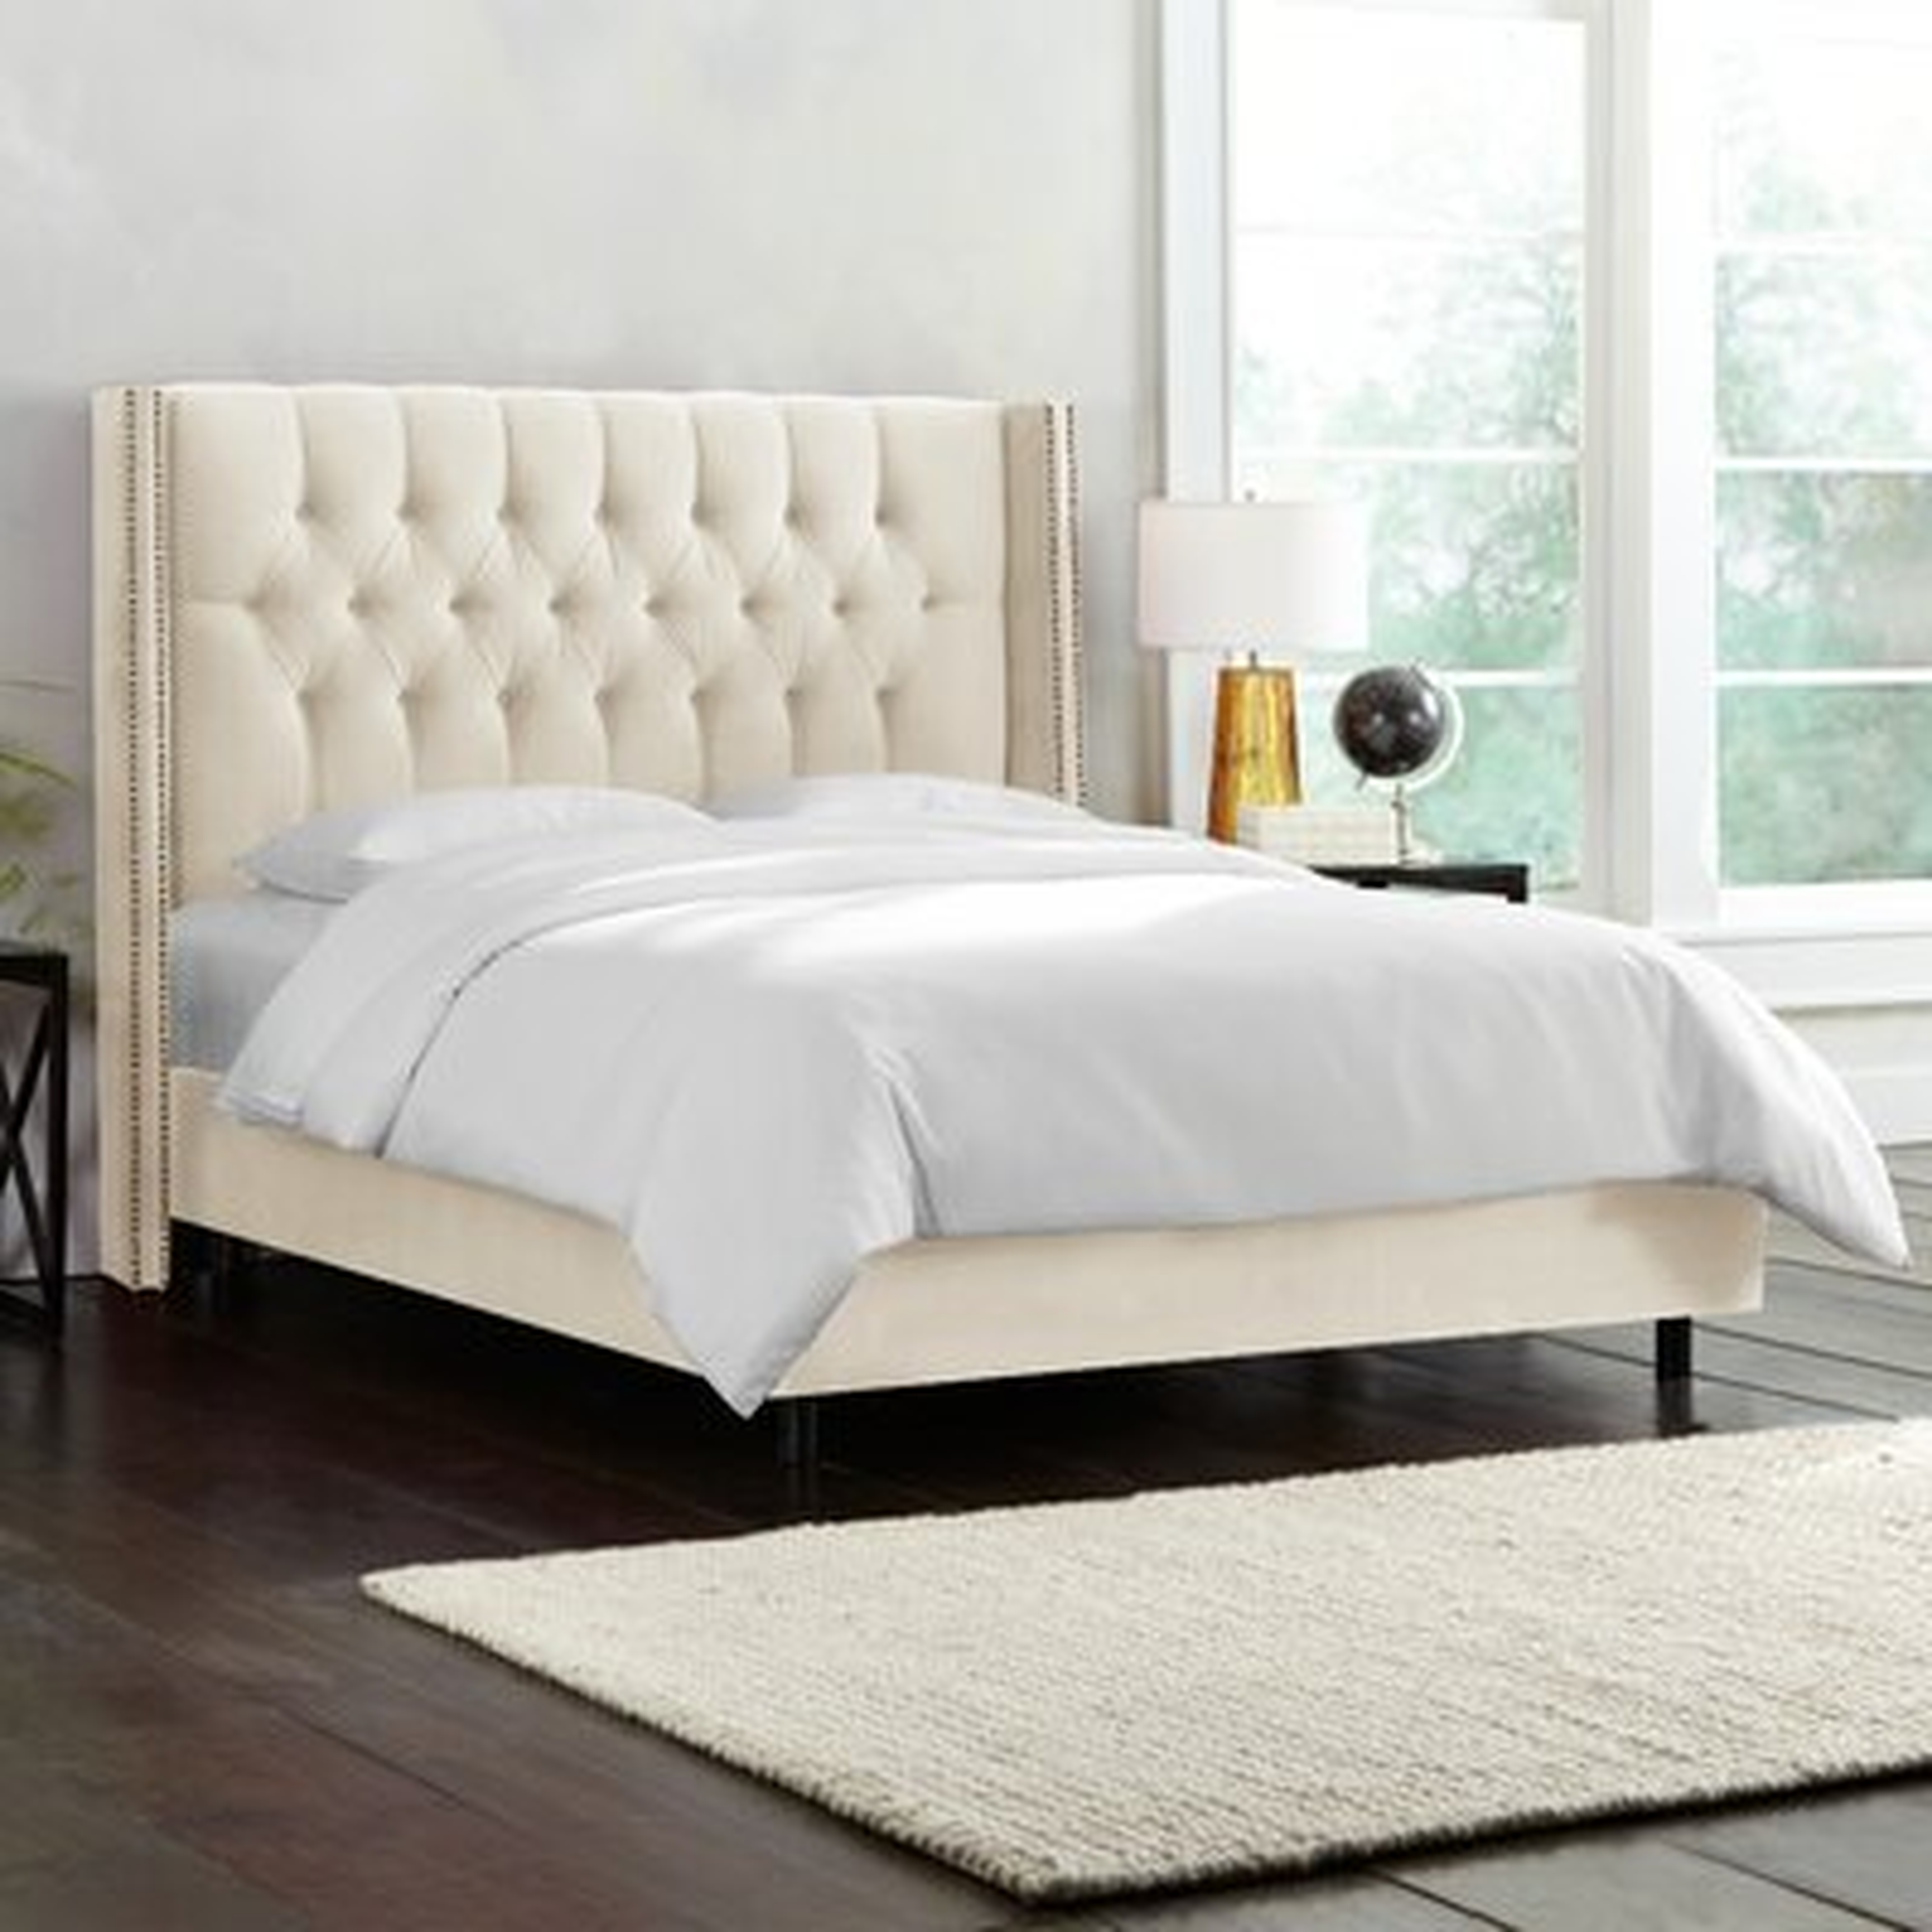 Gerrald Upholstered Standard Bed, queen - Wayfair